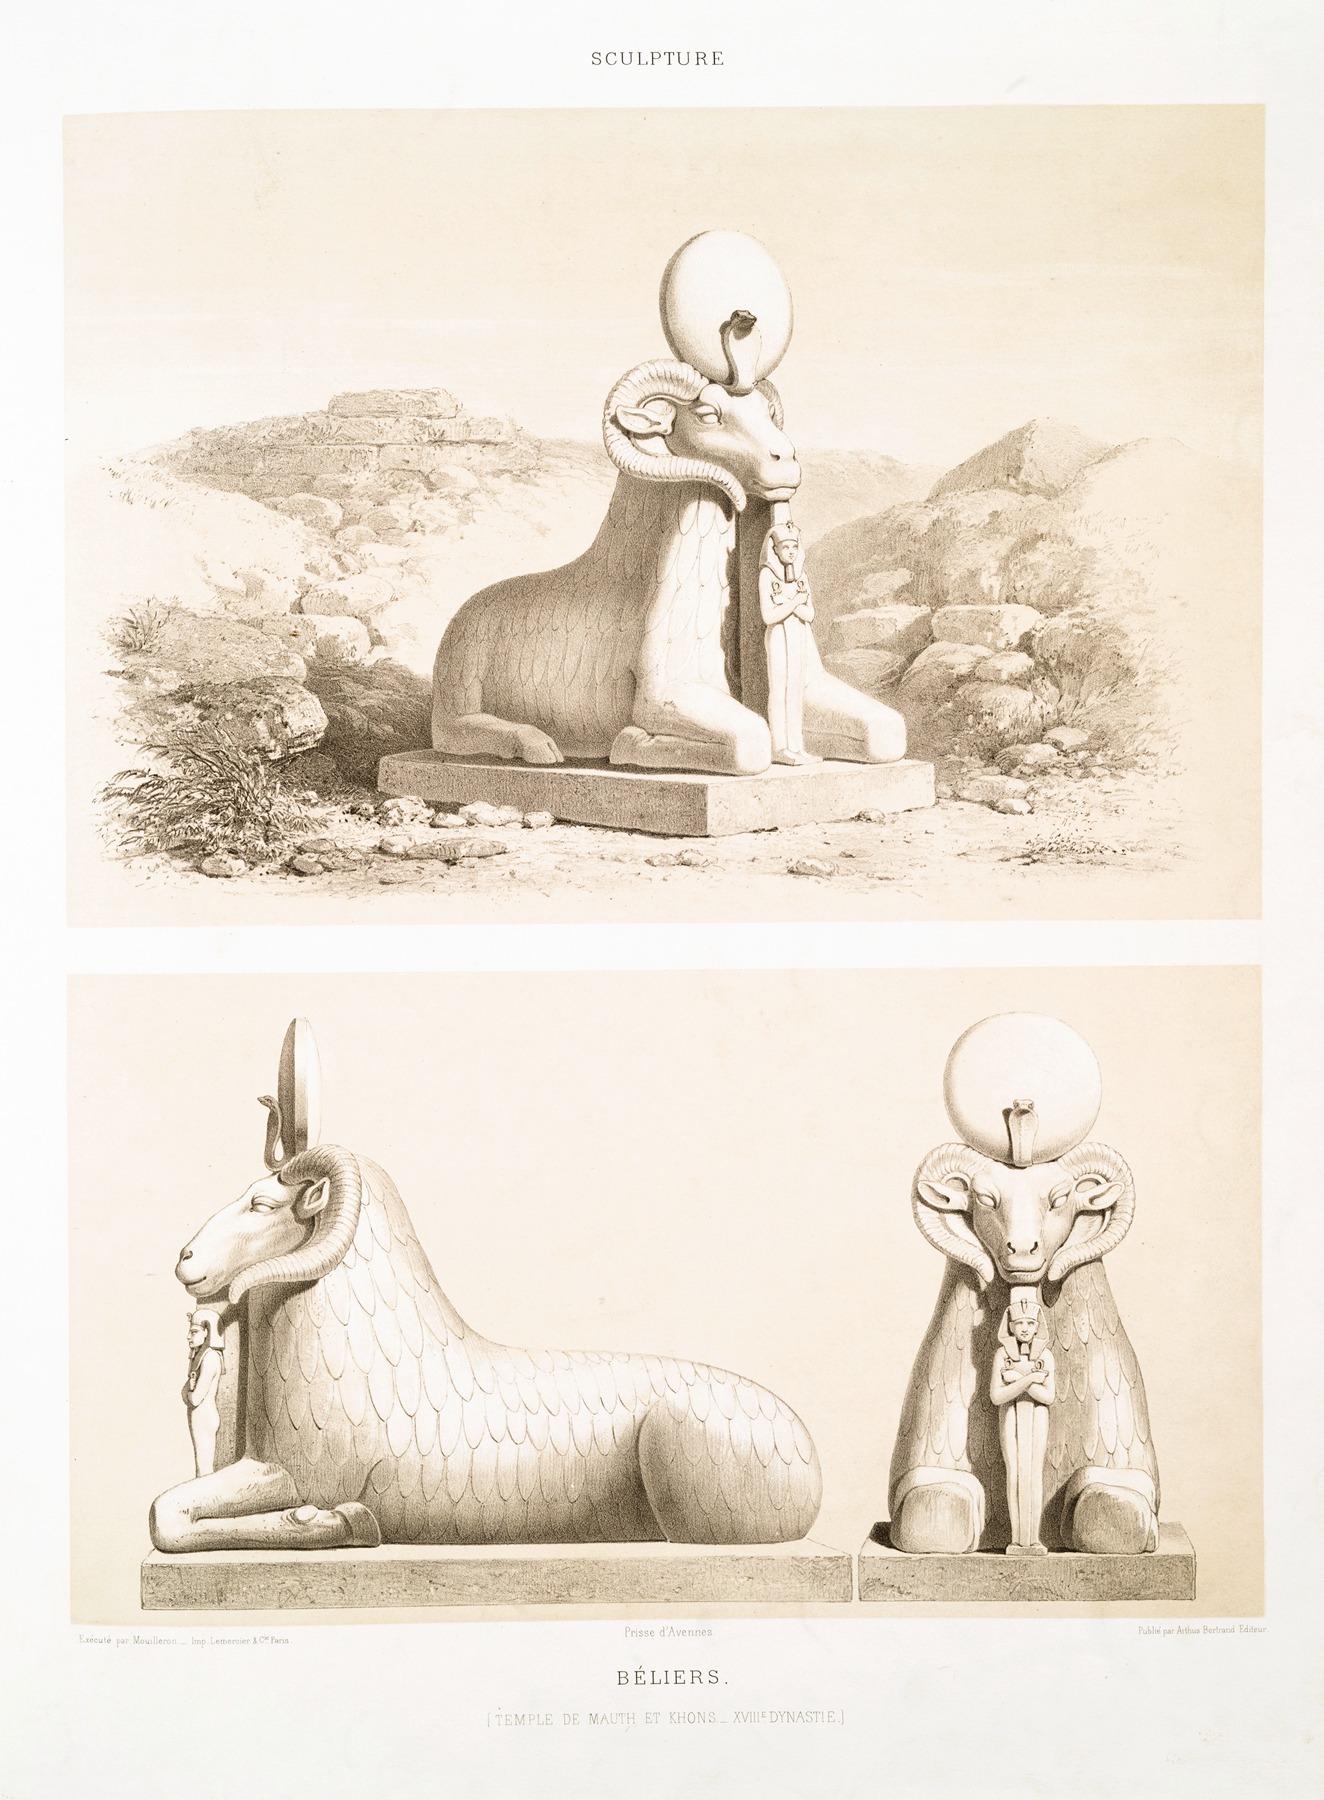 Émile Prisse d'Avennes - Sculpture; béliers (Temple de Mauth et Khons — XVIIIe. dynastie)